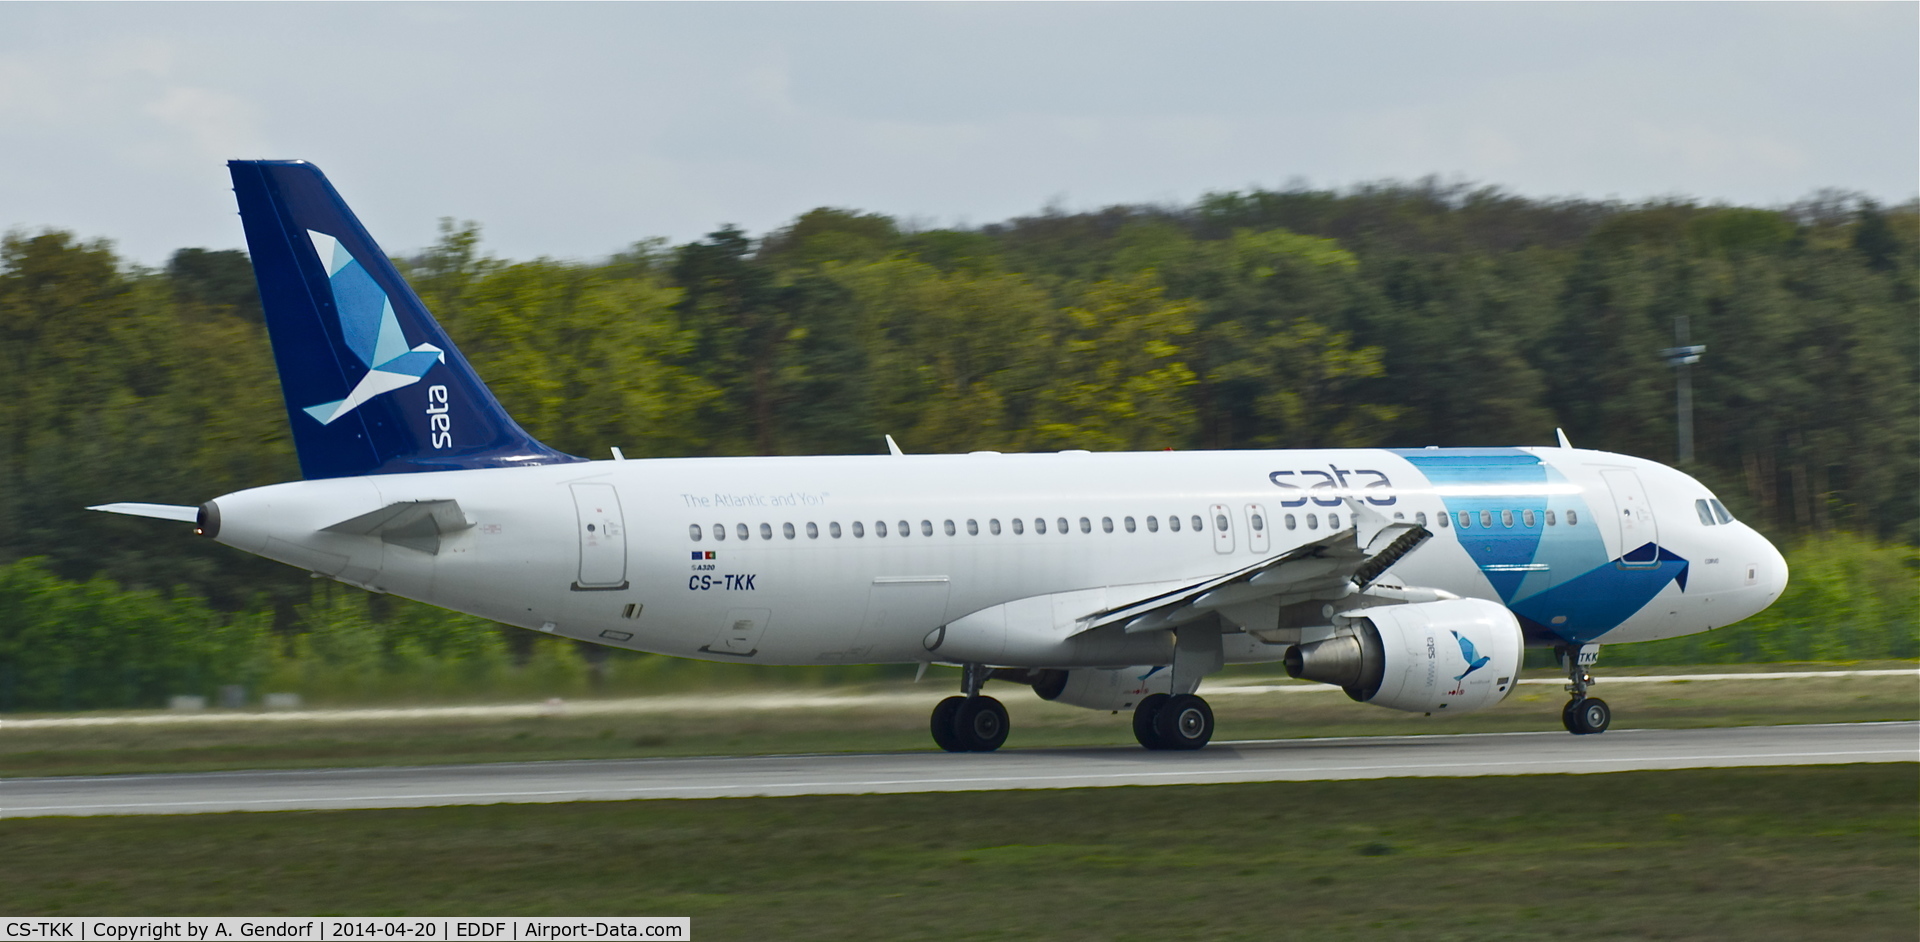 CS-TKK, 2005 Airbus A320-214 C/N 2390, SATA, is here departing on RWY 18 at Frankfurt Rhein/Main Int'l(EDDF)